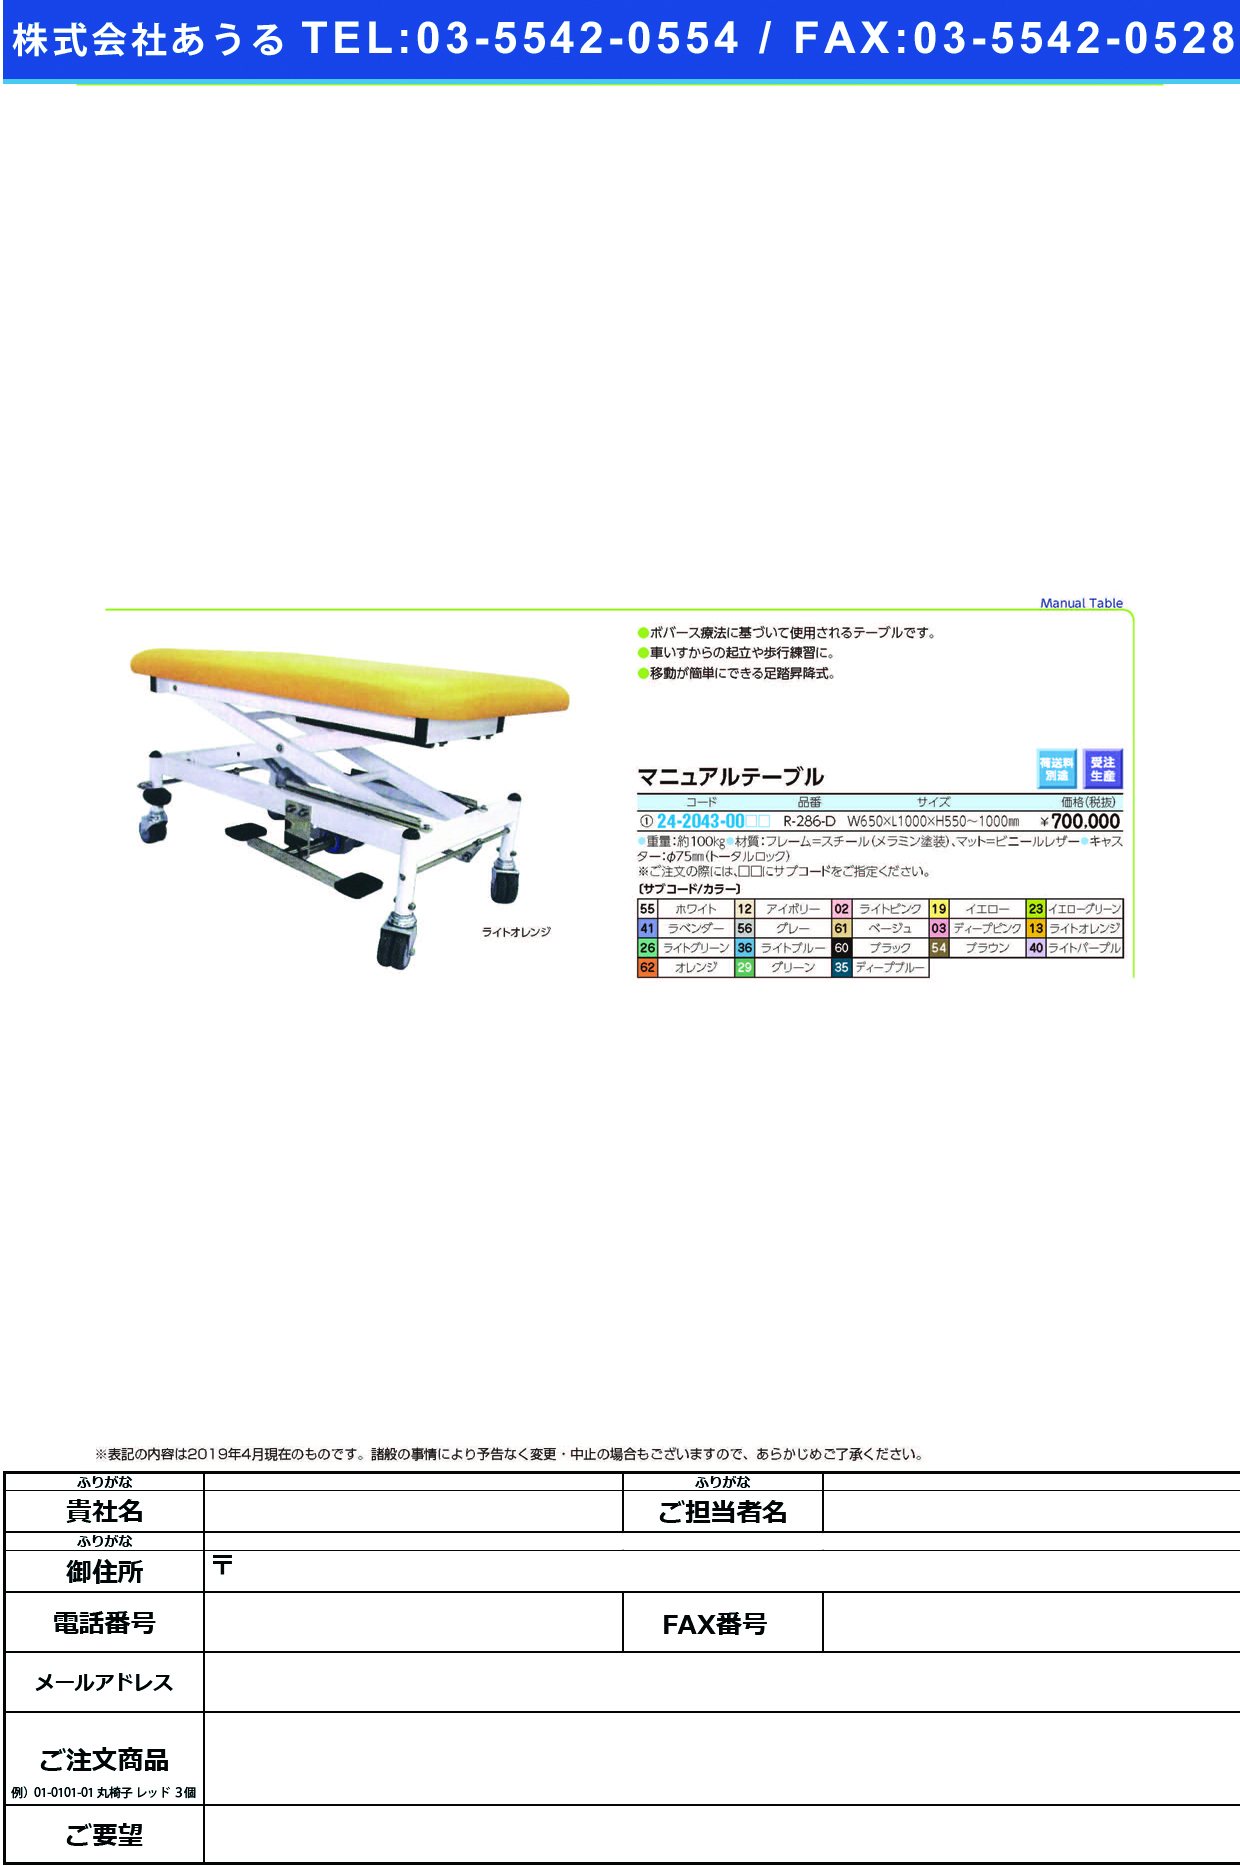 (24-2043-00)マニュアルテーブル R-286-D ﾏﾆｭｱﾙﾃｰﾌﾞﾙ オレンジ【1台単位】【2019年カタログ商品】